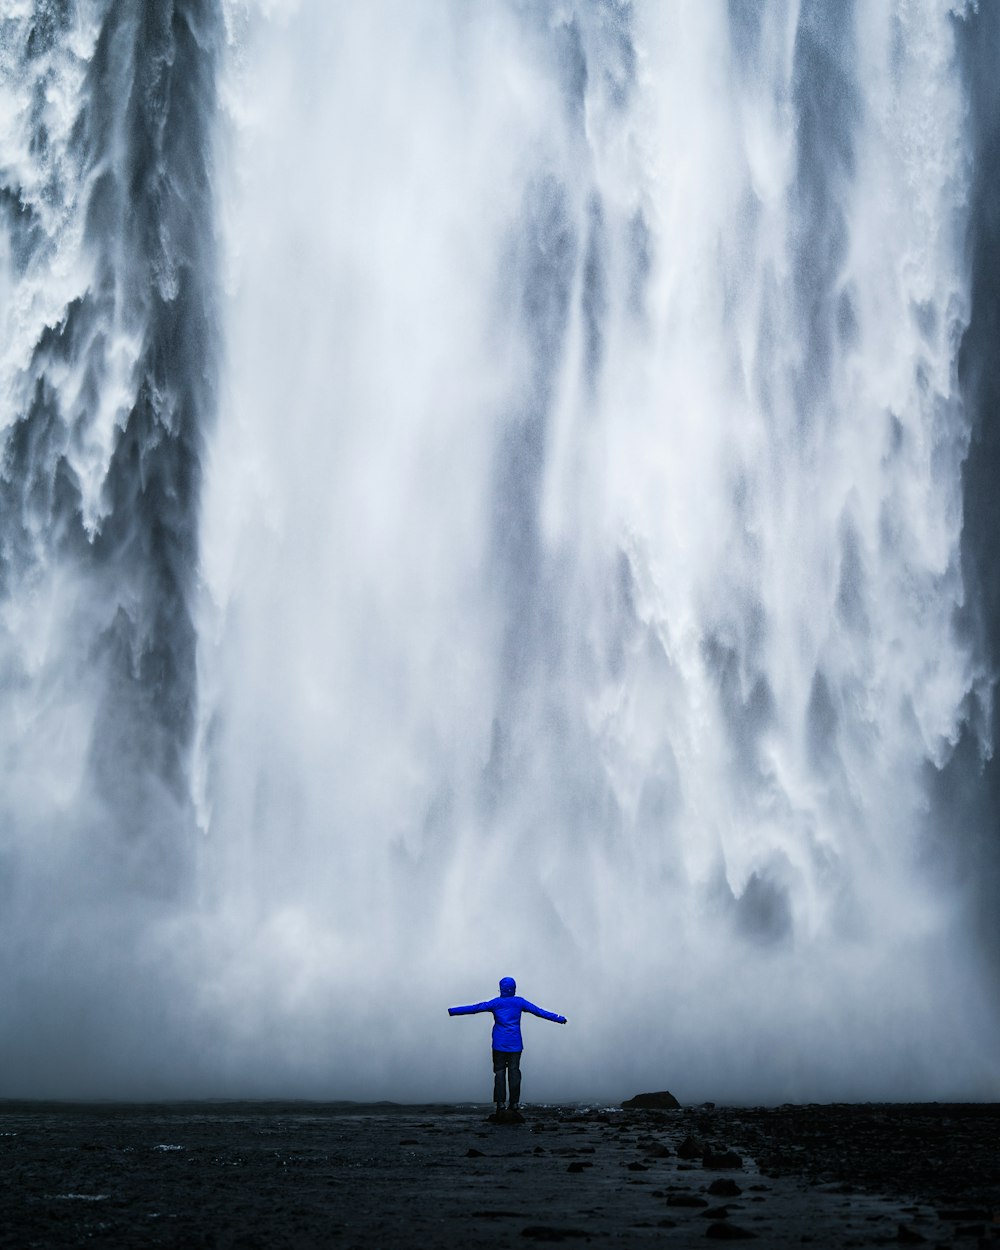 personne portant une veste bleue debout devant des chutes d’eau